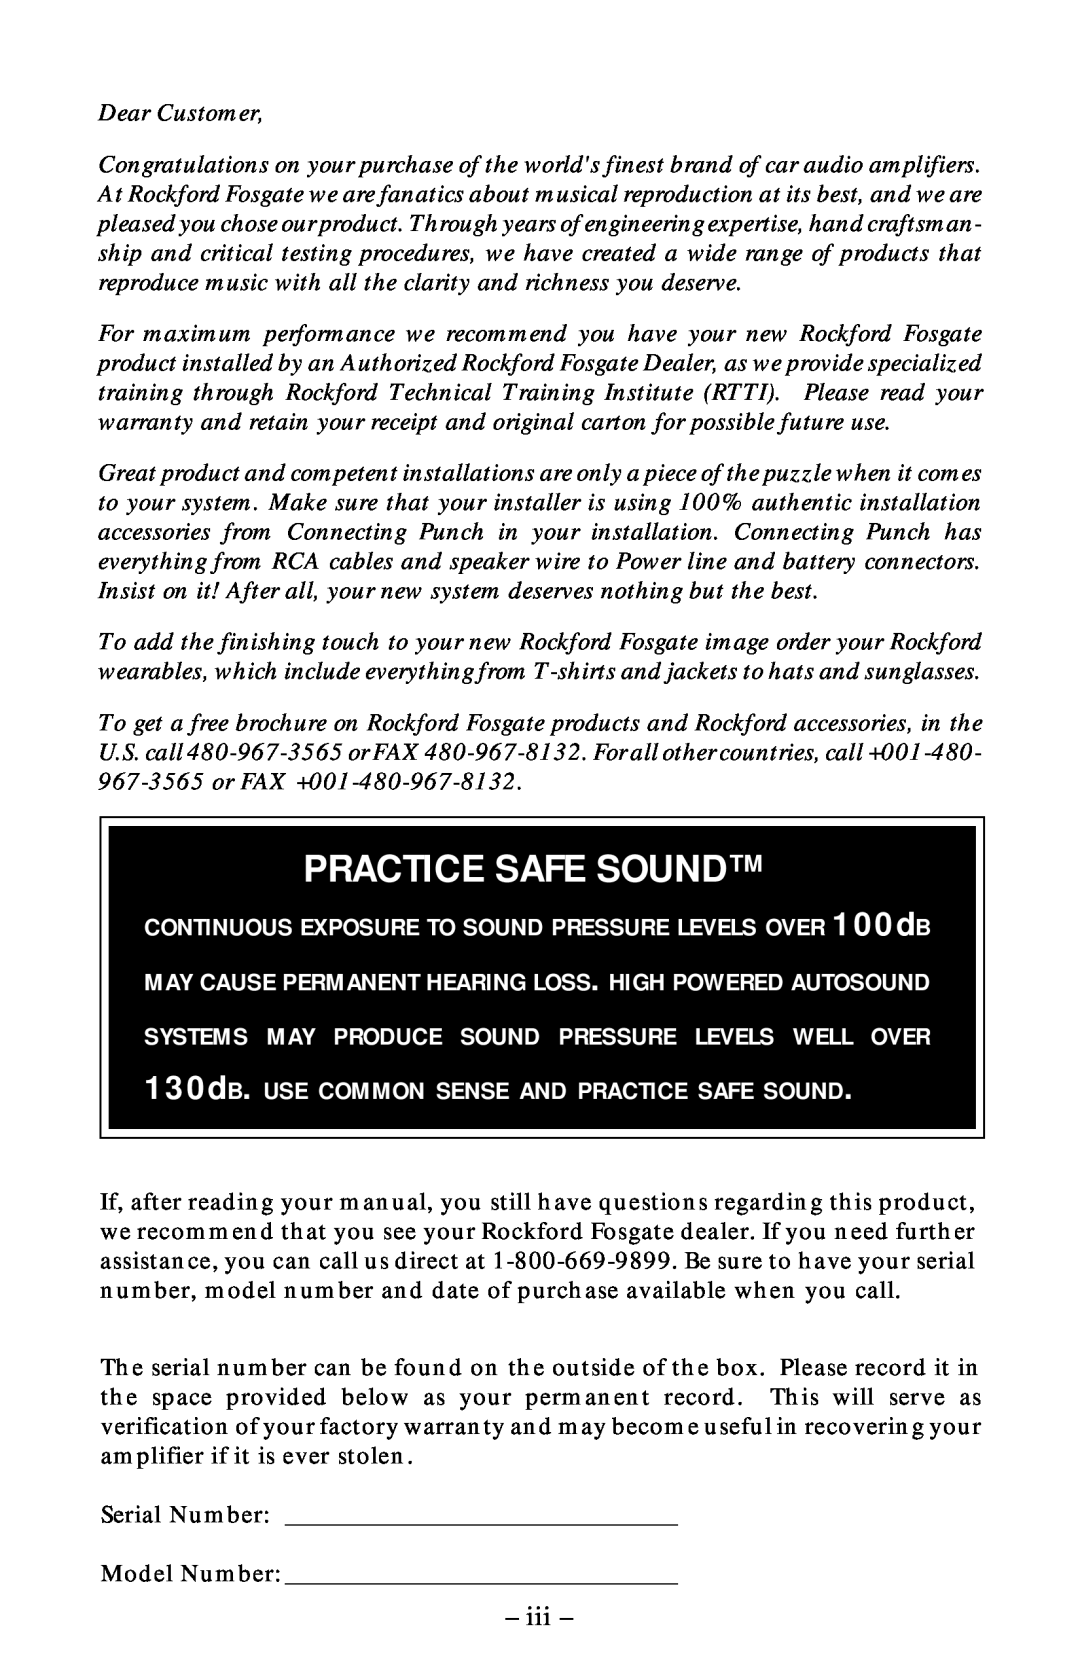 Rockford Fosgate 360, 400, 1000 manual iii, Practice Safe Sound 